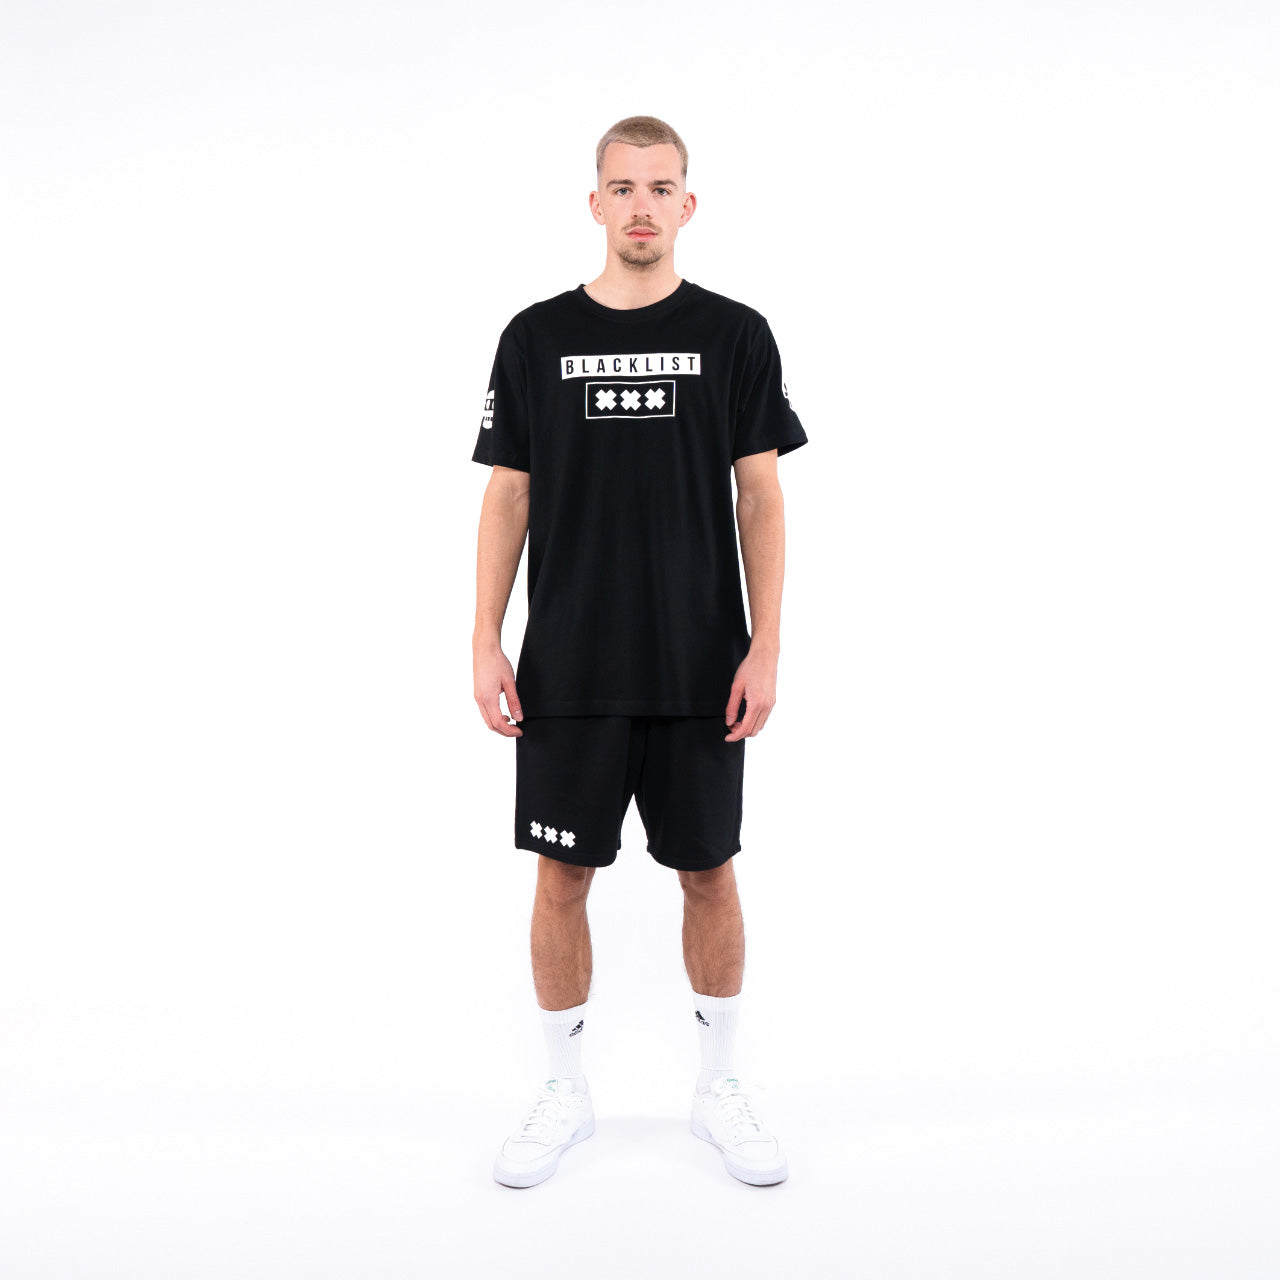 Blacklist - Advanced Collection 1 T-Shirt und Shorts Bundle